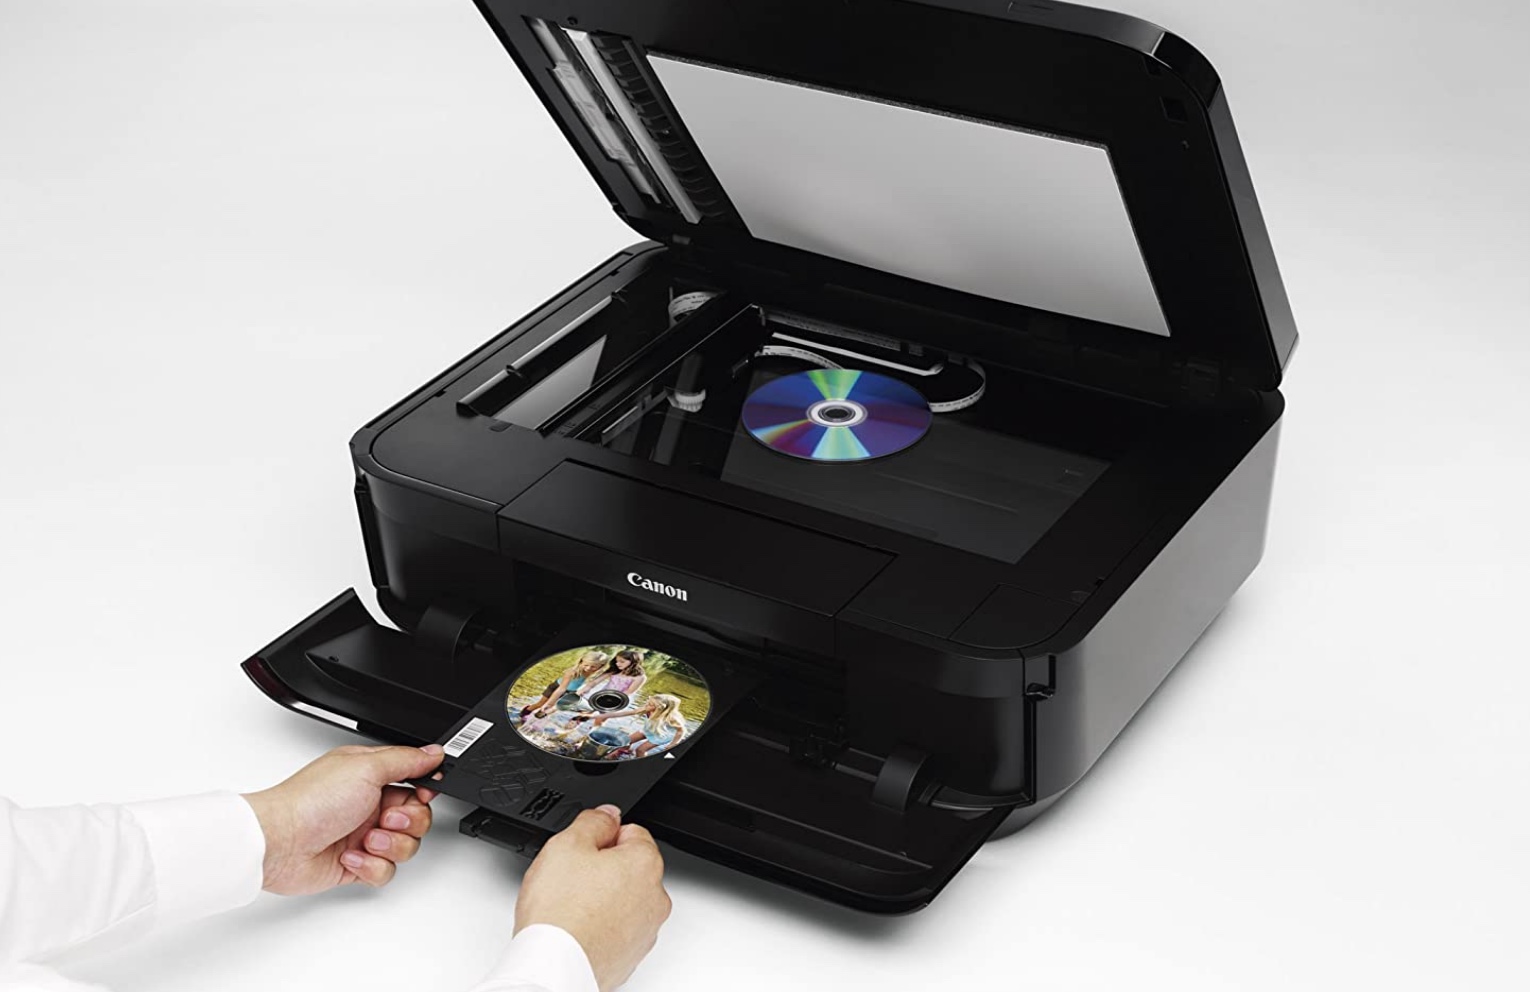 Printable Cd Printer